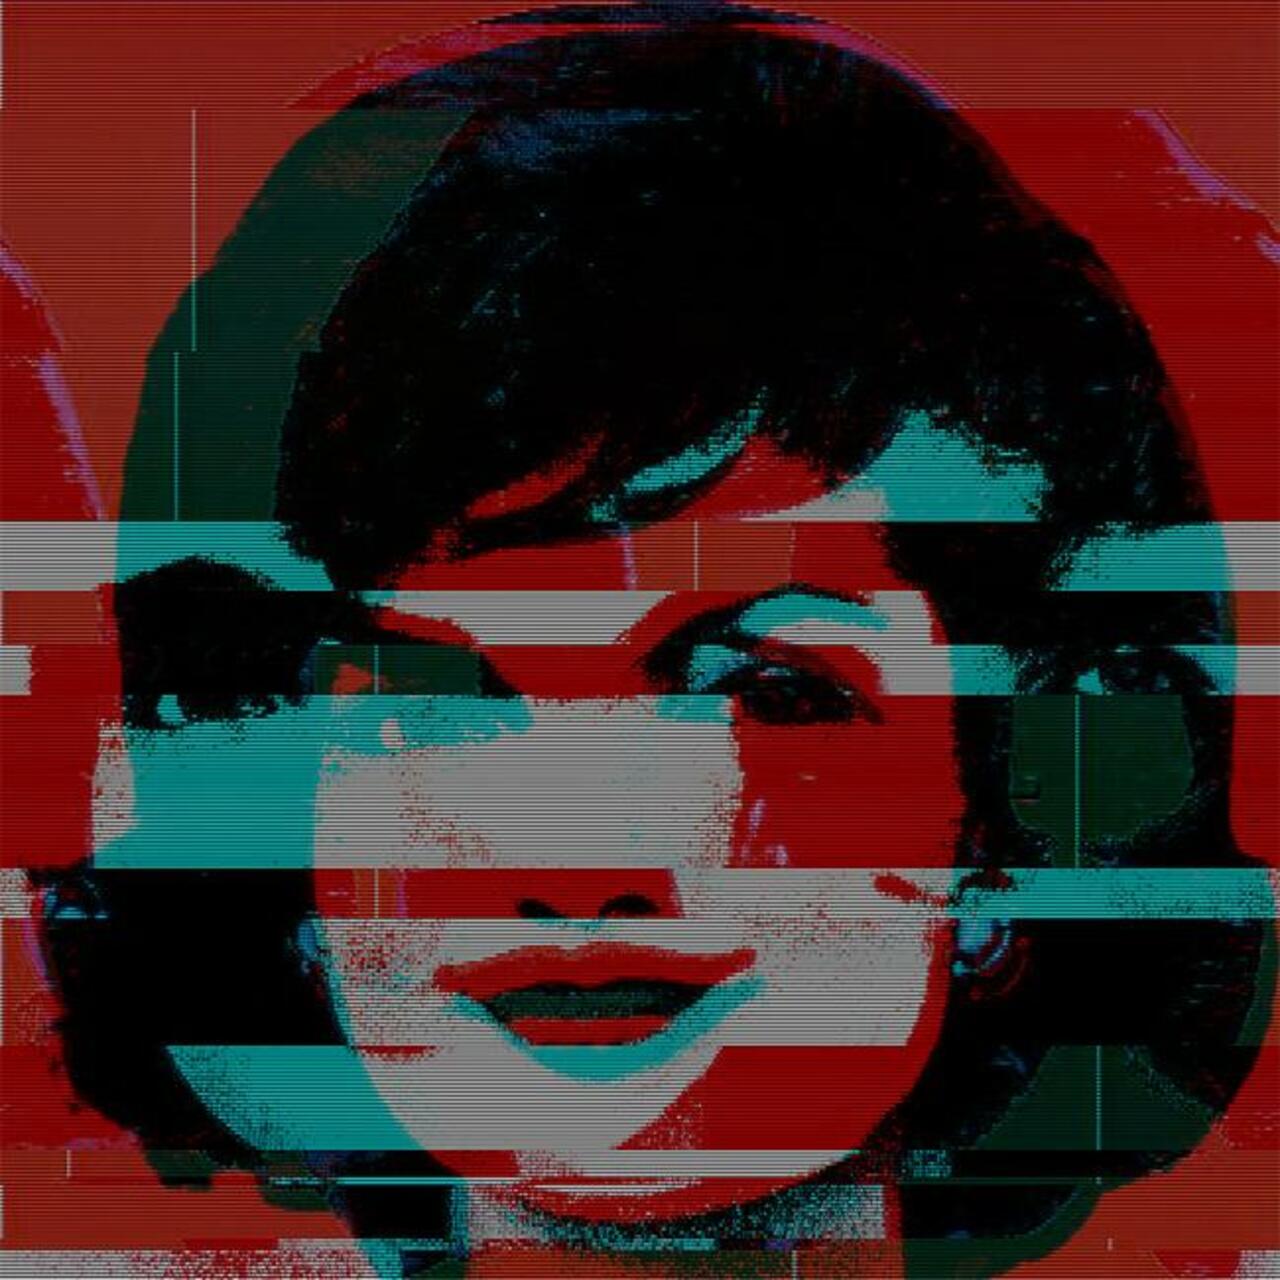 RT @armandoCSH: #JackieO #glitch #art #2 #Warhol #graffiti #streetart #urbanart #gallery #red #turquoise #teal #portrait #static http://t.co/JAft1EggPK